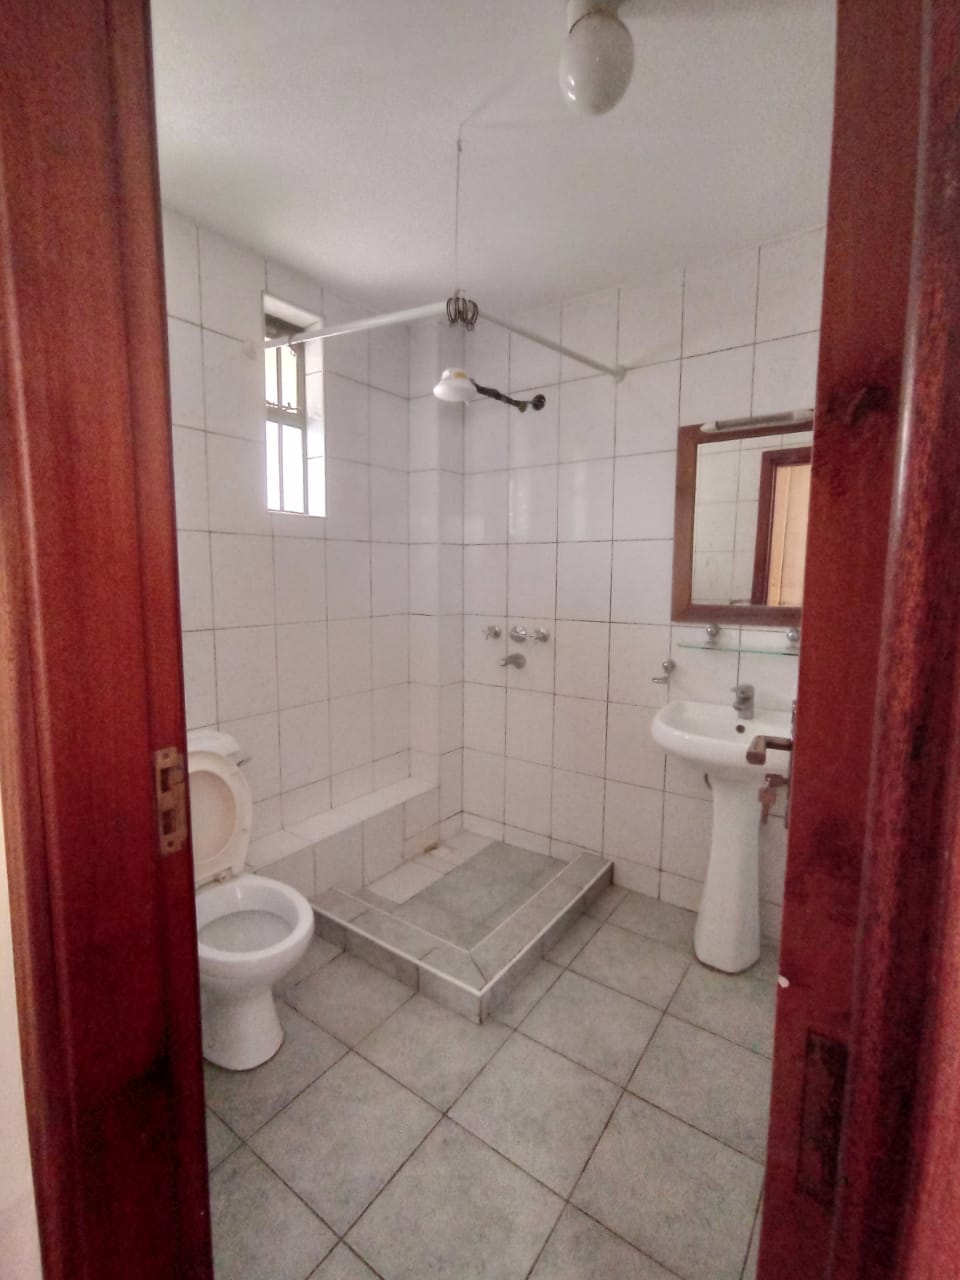 Hot Deal - 3 Bedroom Apartment for Rent in Kileleshwa, Githunguri Road for Ksh70k:Month12